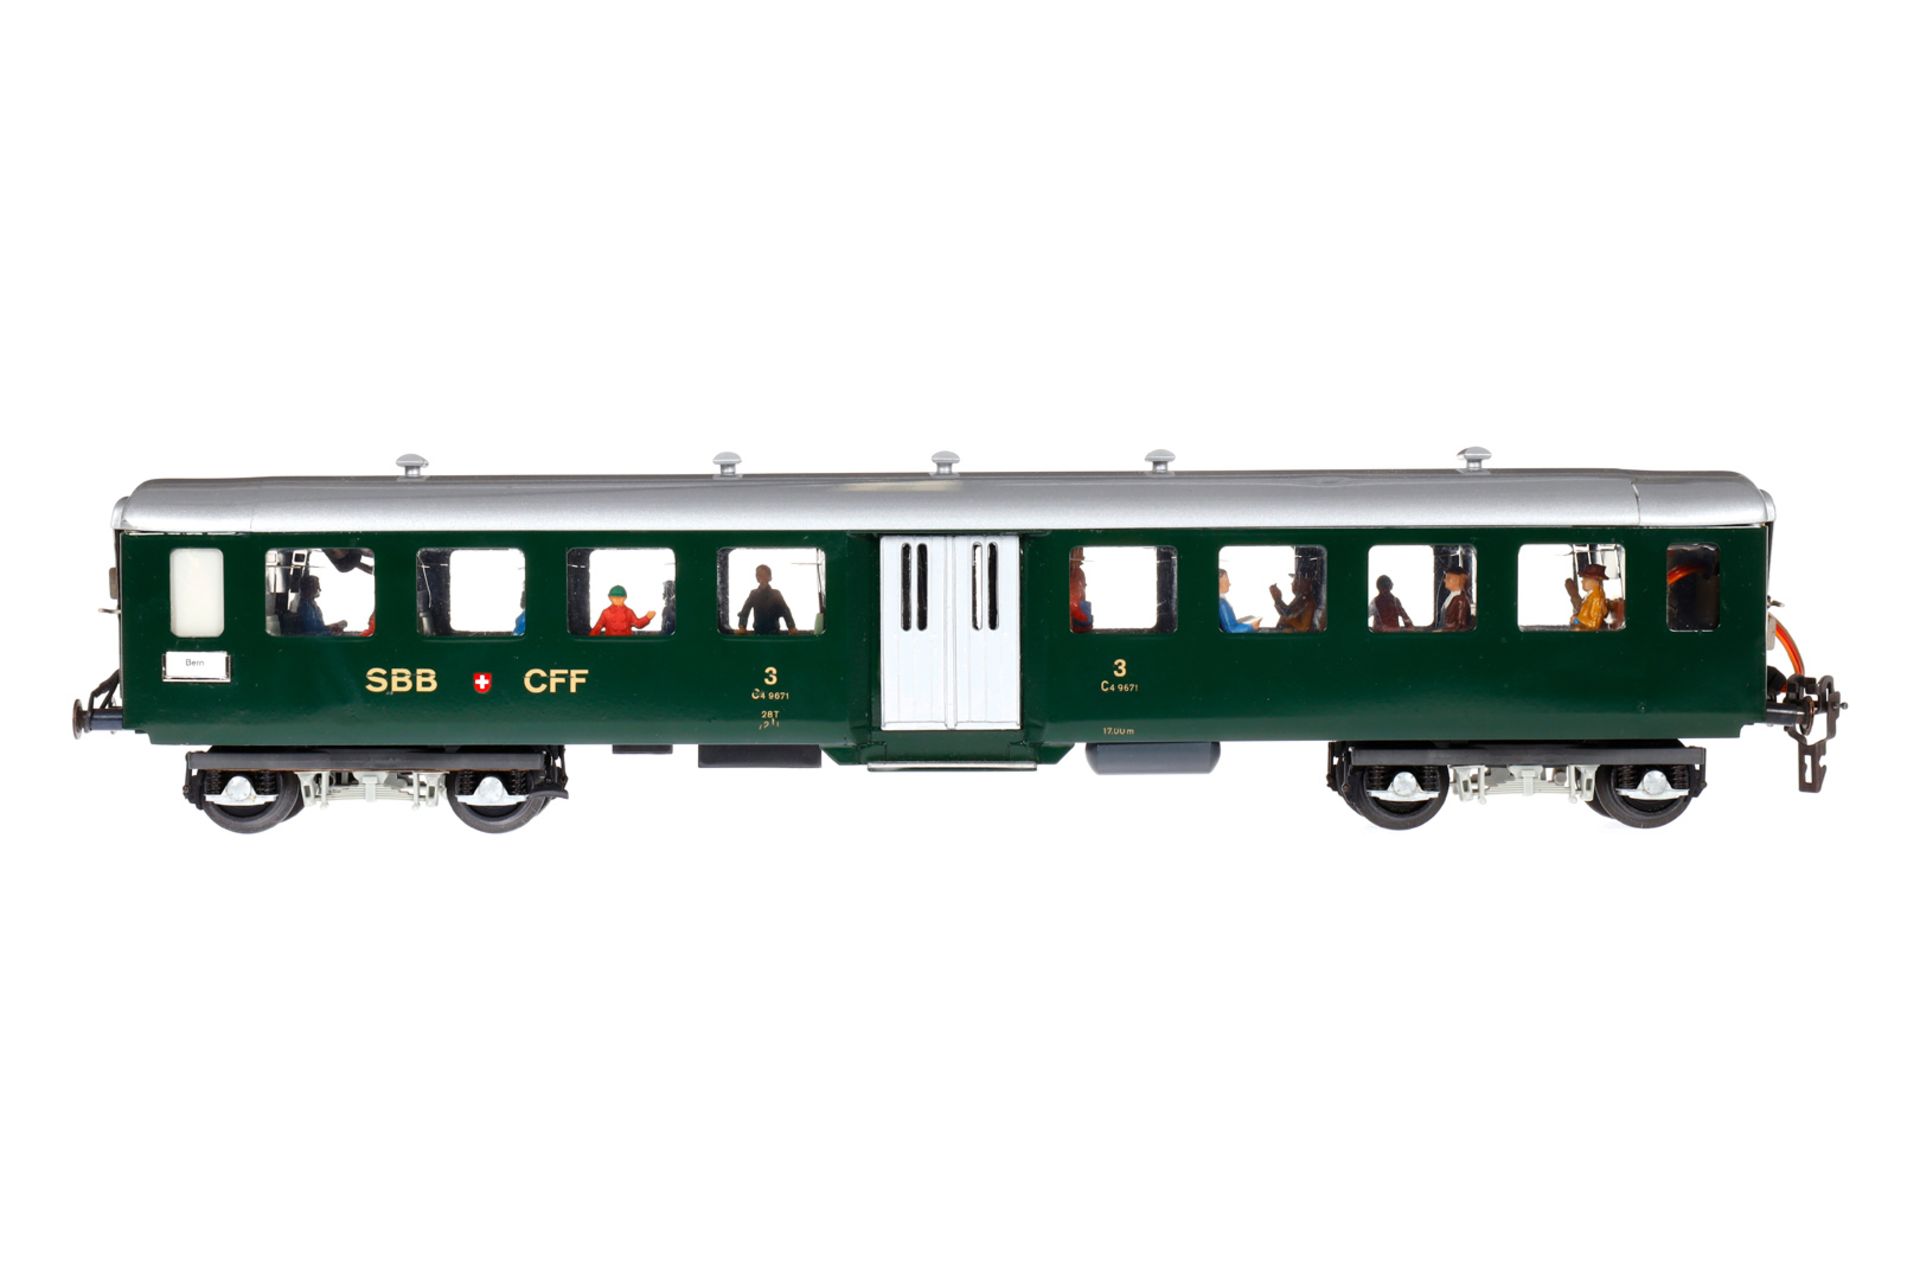 Resal Personenwagen, Spur 0, grün, mit Inneneinrichtung und Fremdbeleuchtung, 3. Klasse,